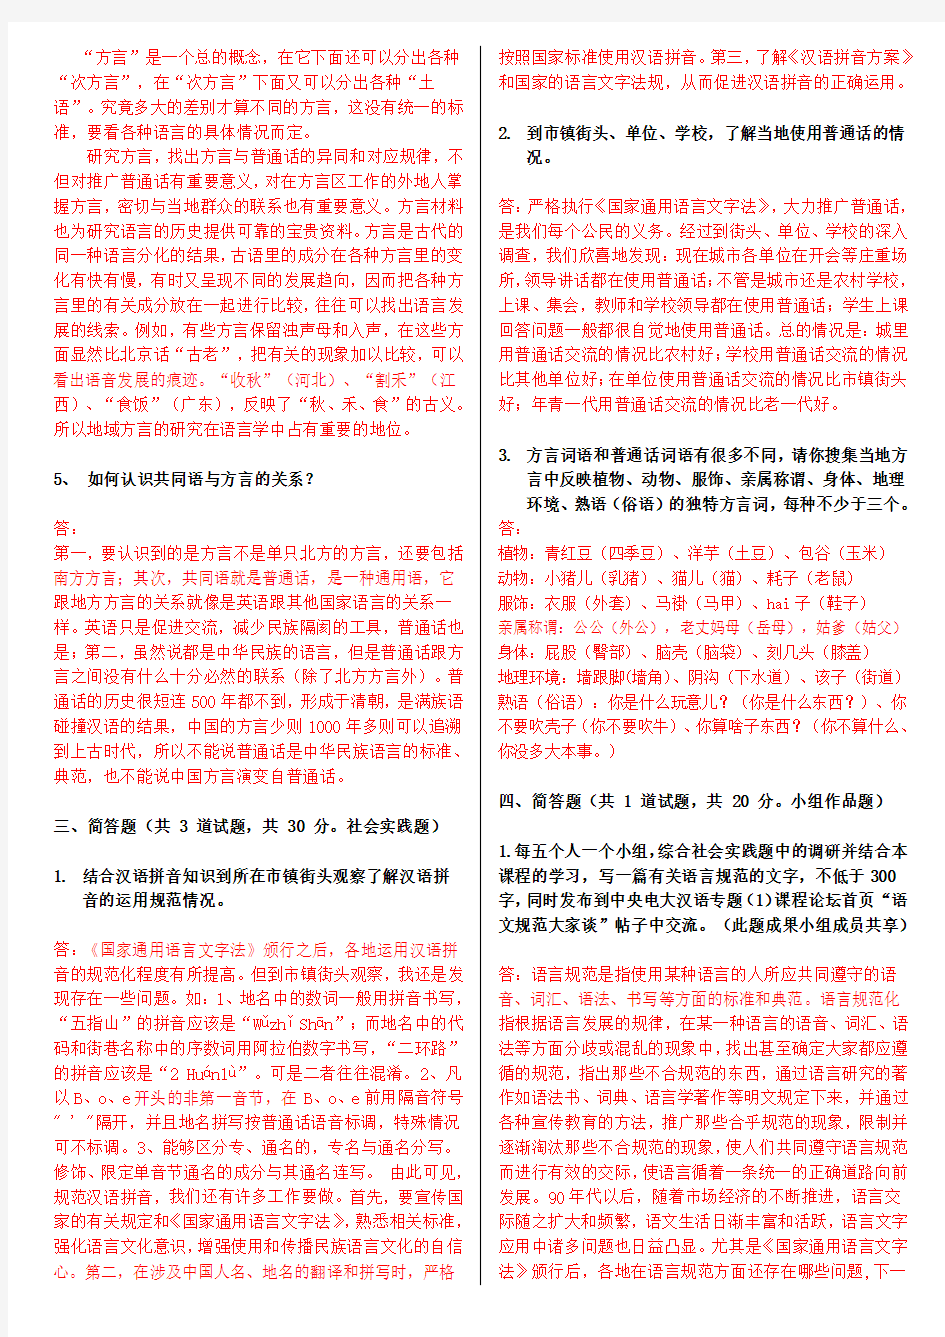 电大本科《现代汉语专题》形考作业任务01-09网考试题及答案